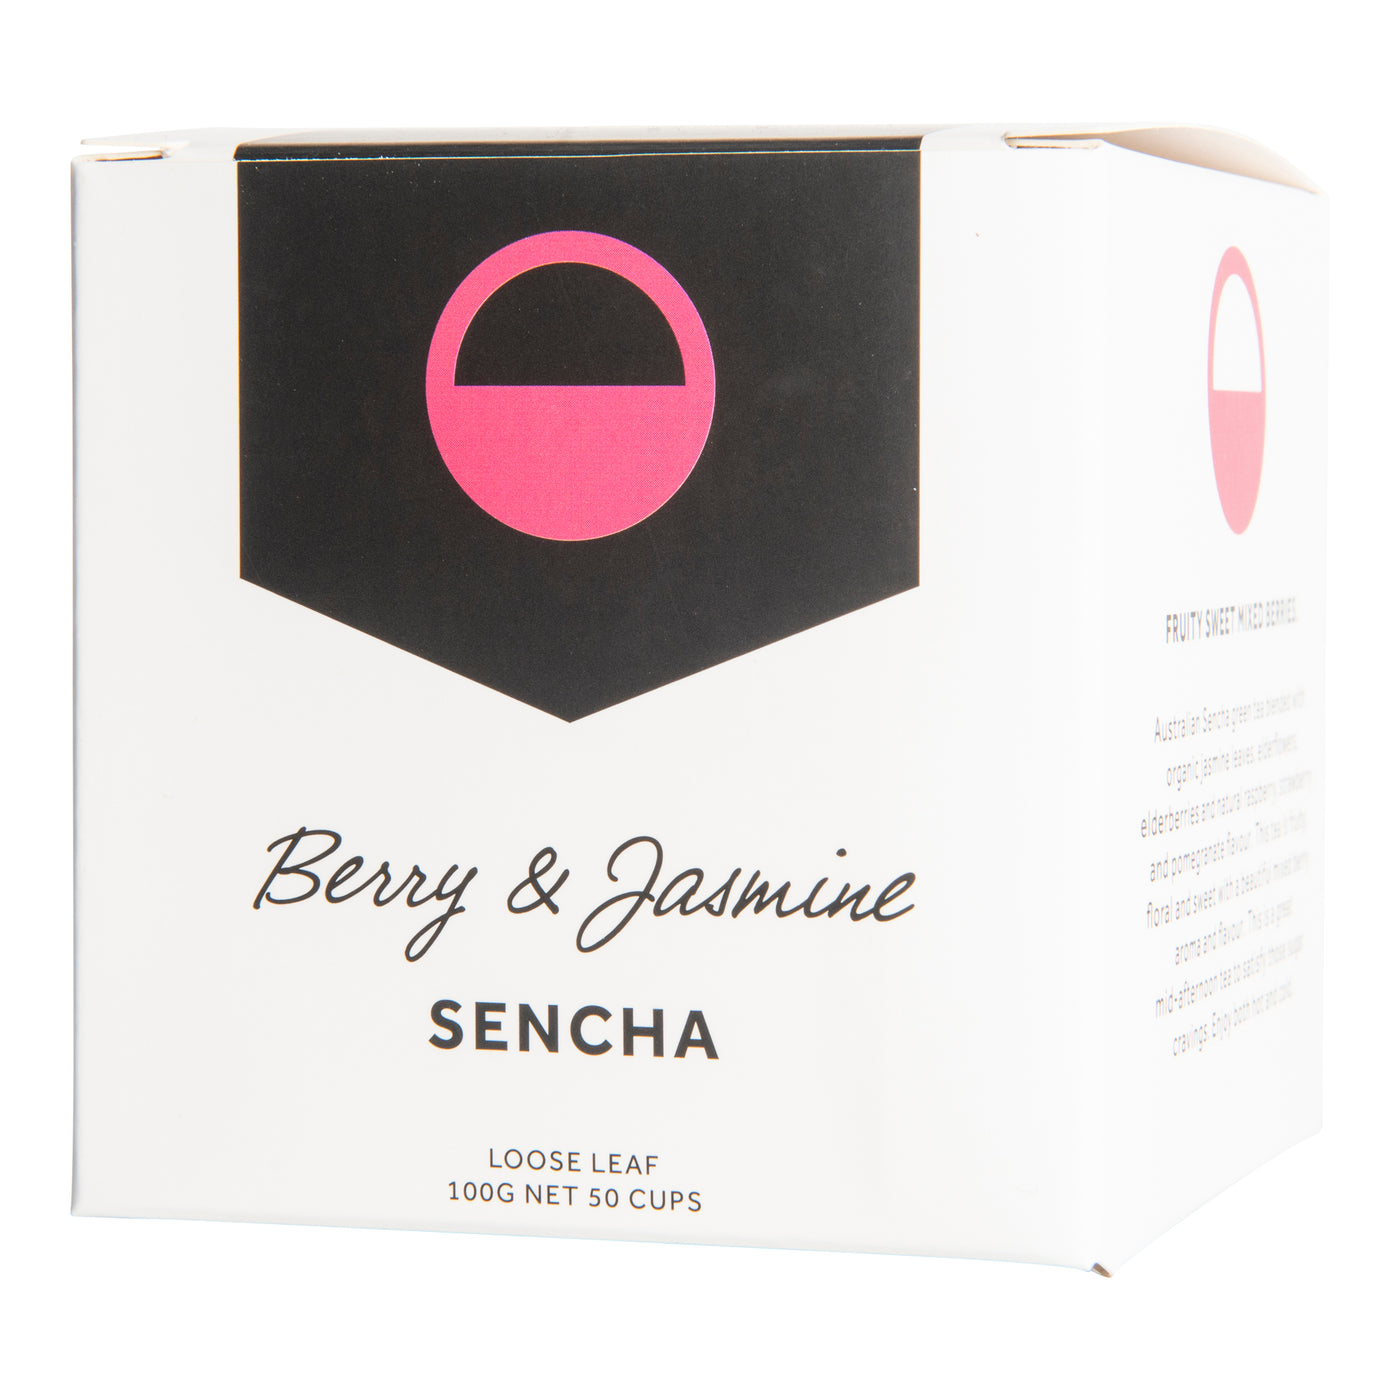 Berry & Jasmine Sencha Green Tea